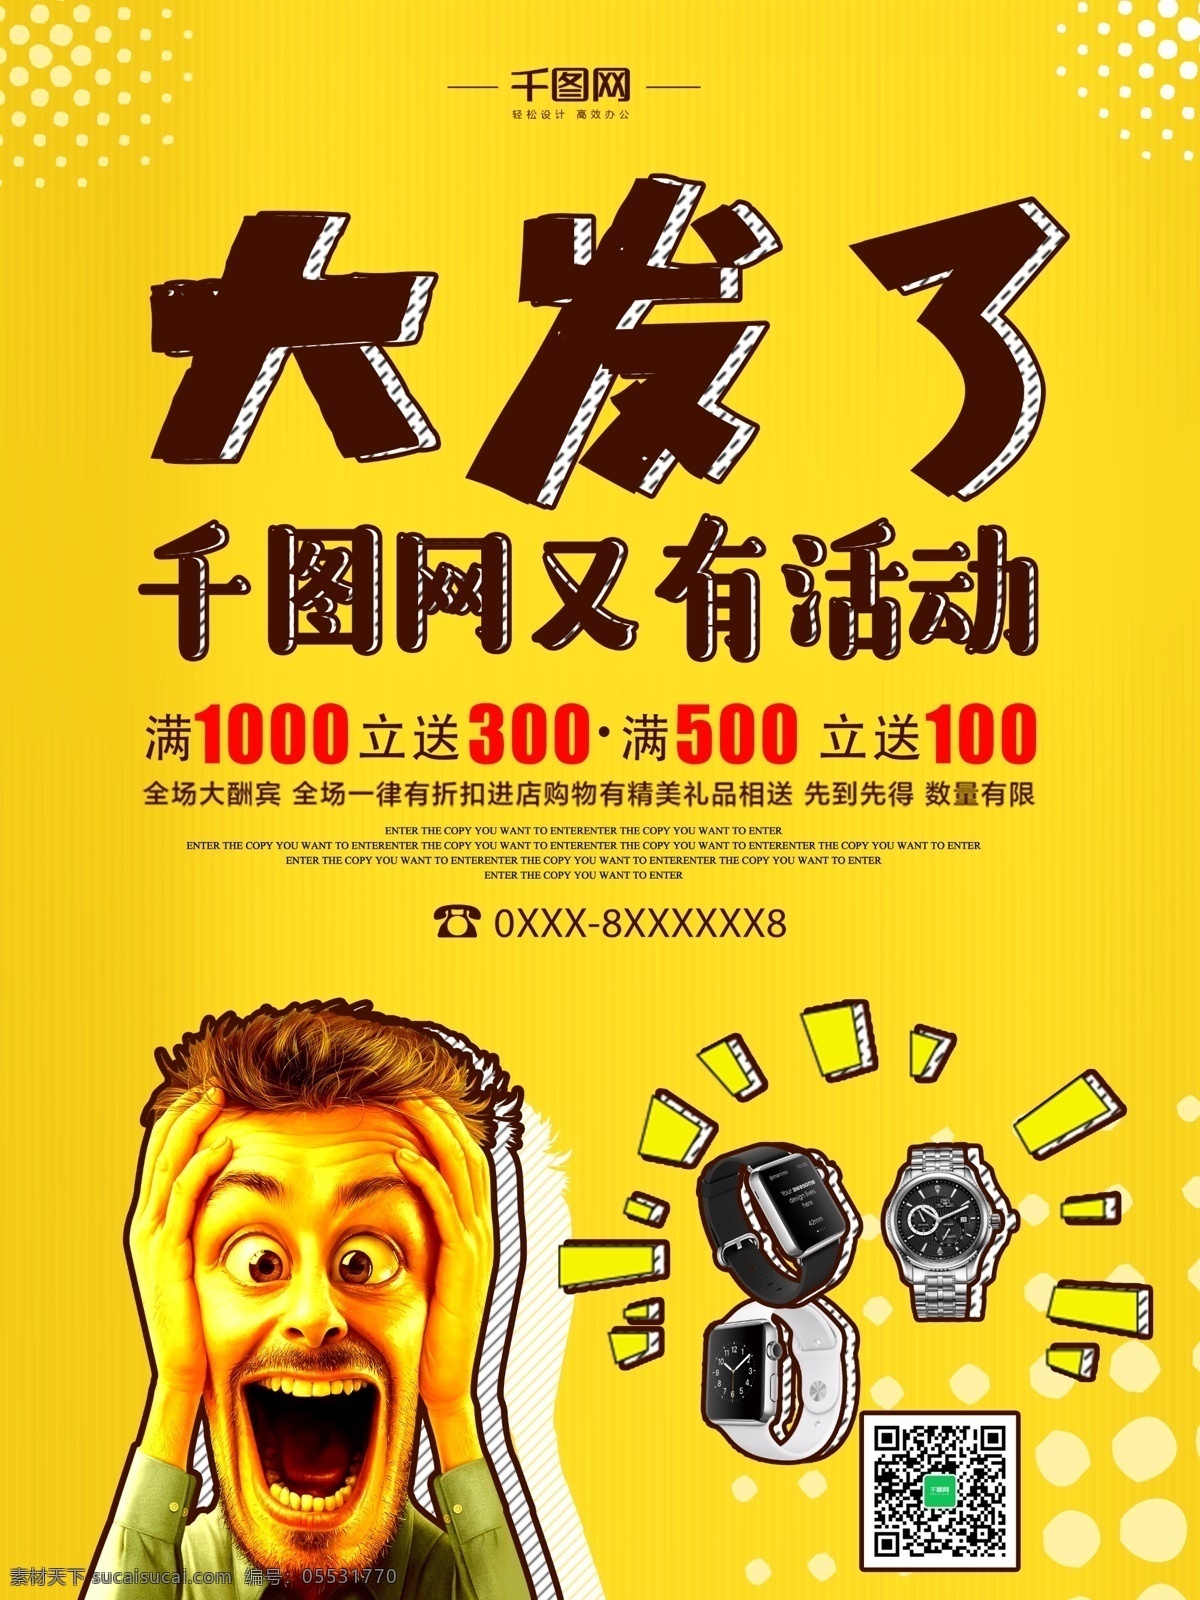 黄色 商业促销 海报 促销 活动 打折 优惠 折扣 满减 手表 机械 男士 夸张 卡通 人物